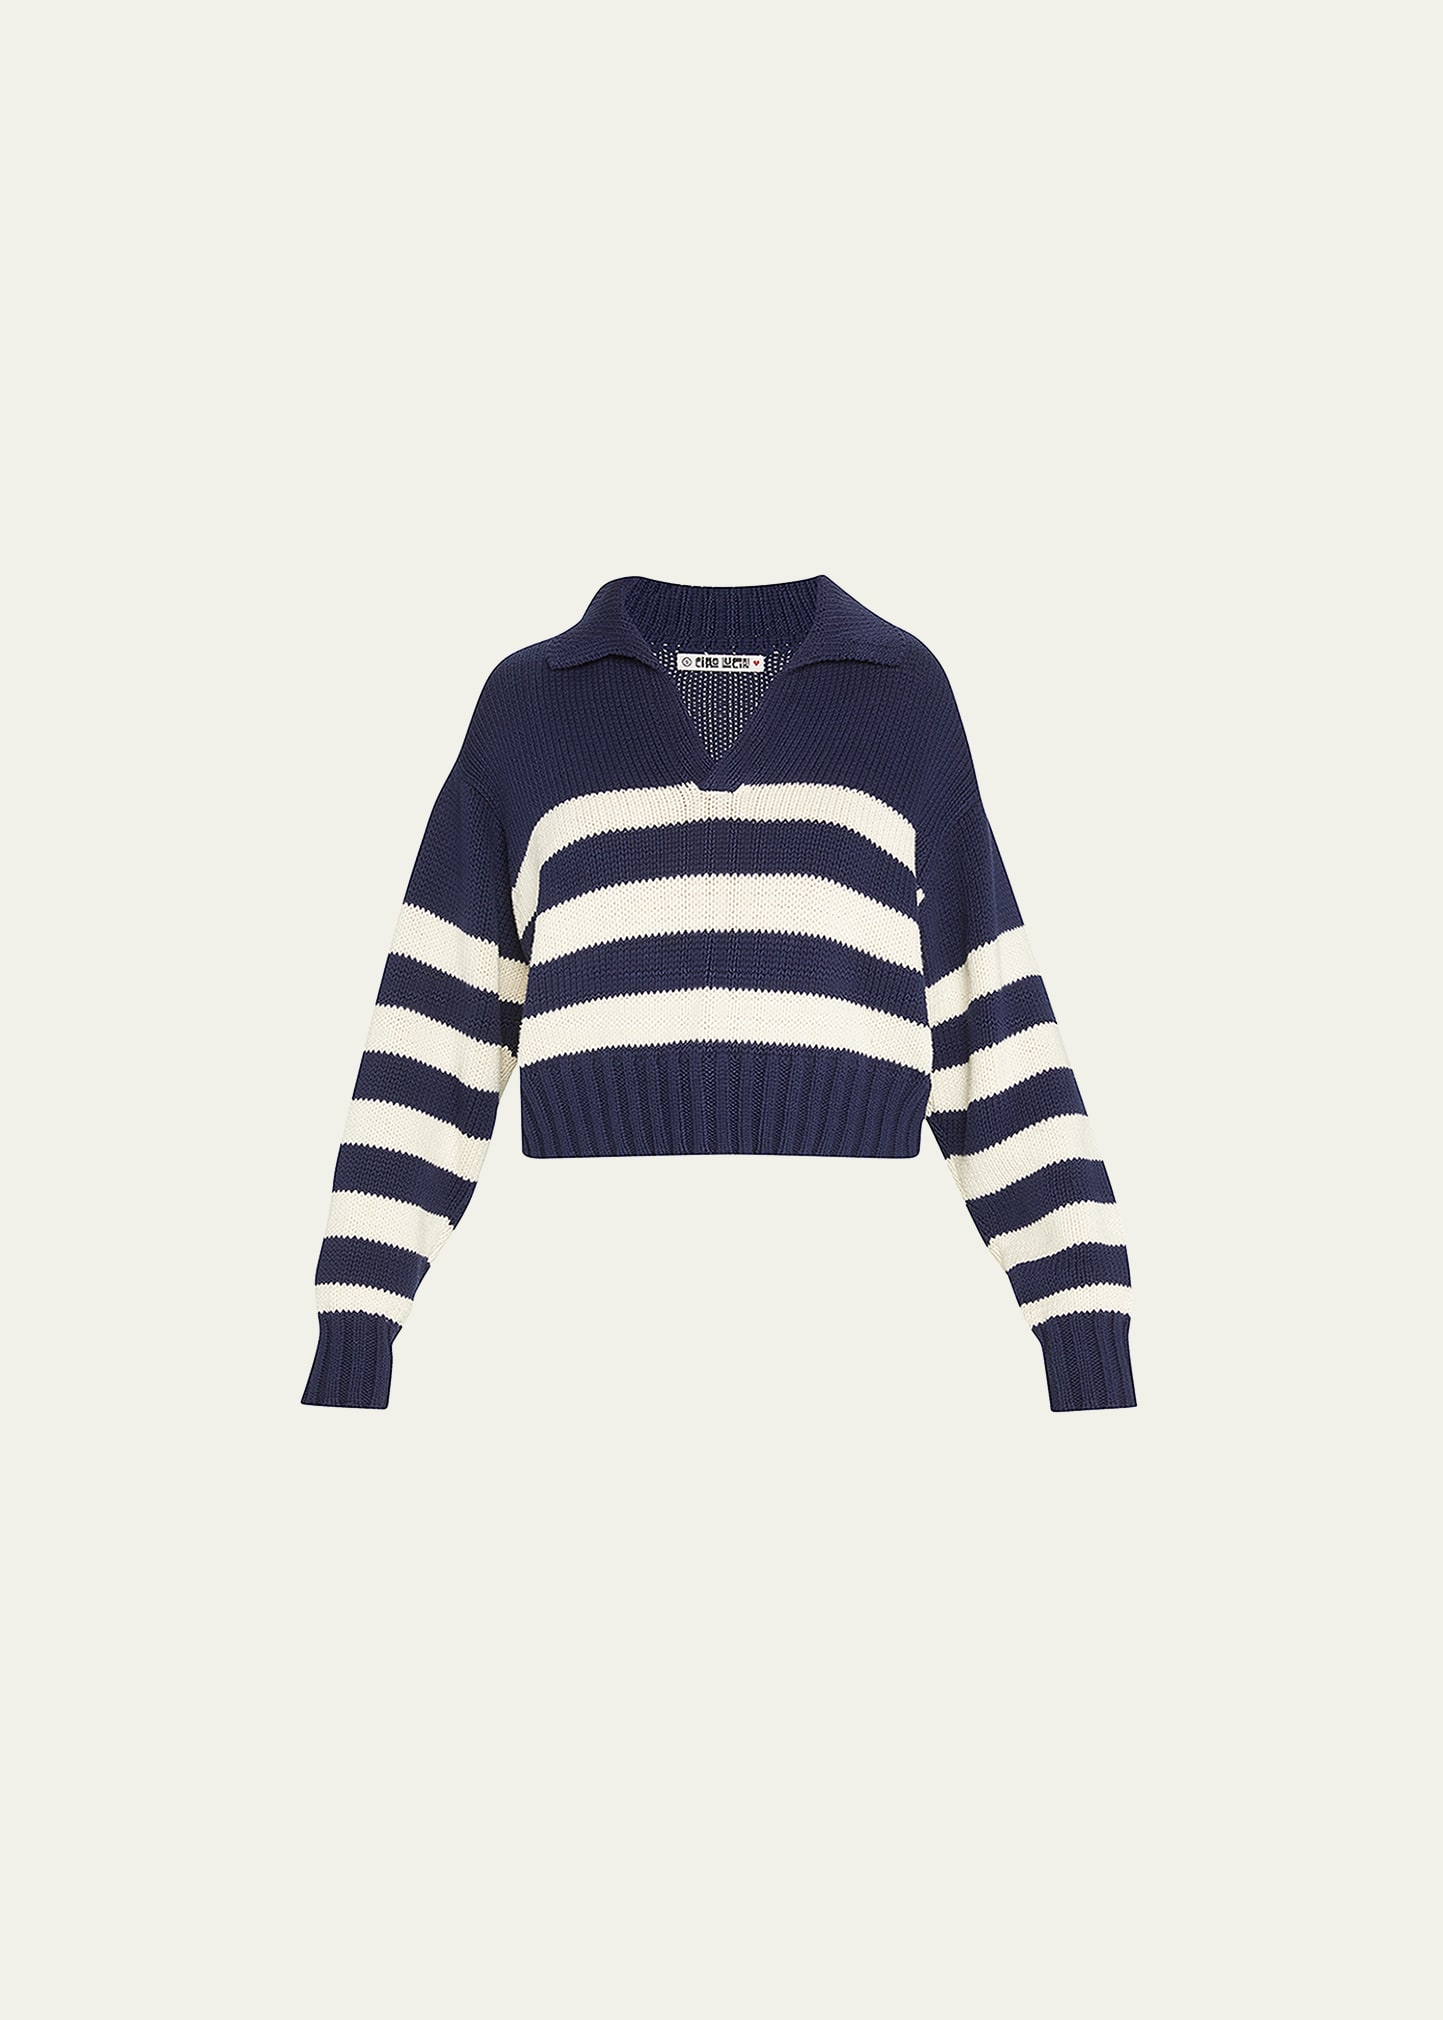 Ciao Lucia Venezia Striped Sweater